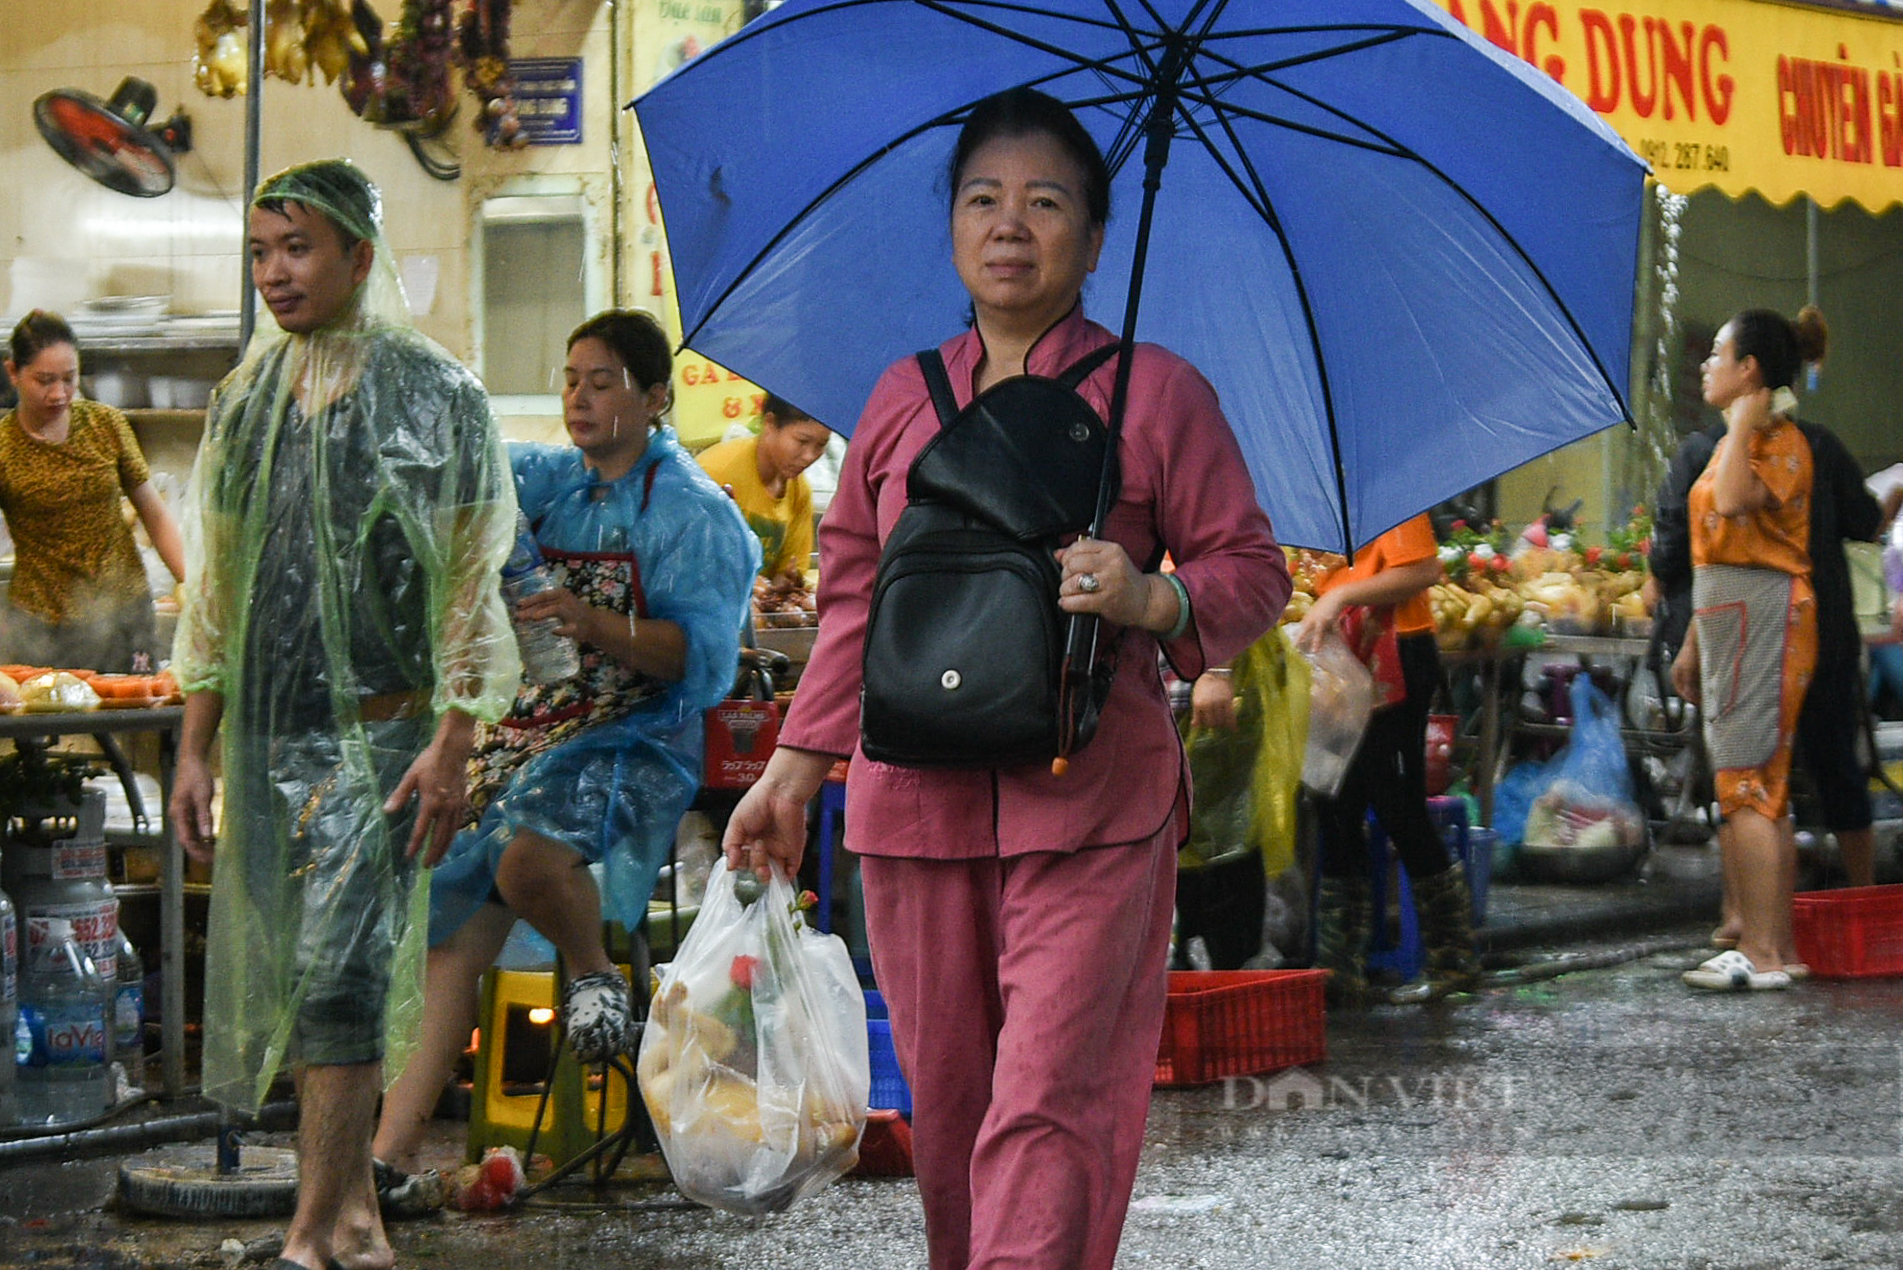 Người dân đội mưa sắm đồ cúng Rằm tháng 7 tại chợ nhà giàu - Ảnh 7.